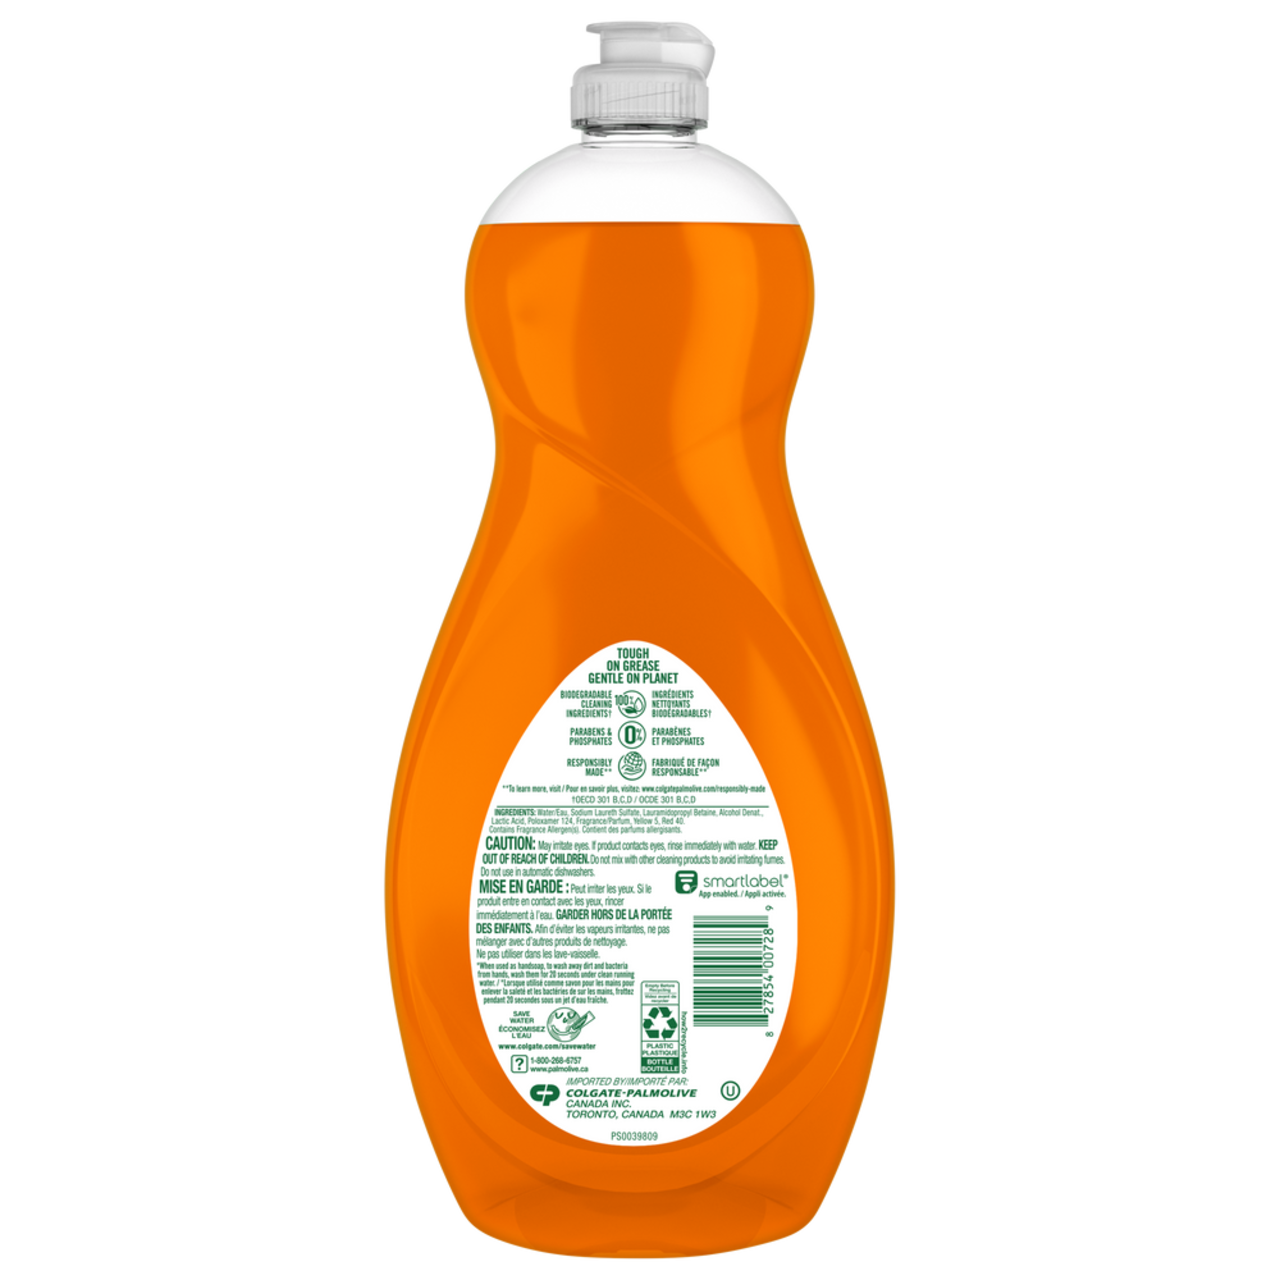 Palmolive Ultra Liquid Dish Soap Detergent, Orange Citrus Scent, 961-mL